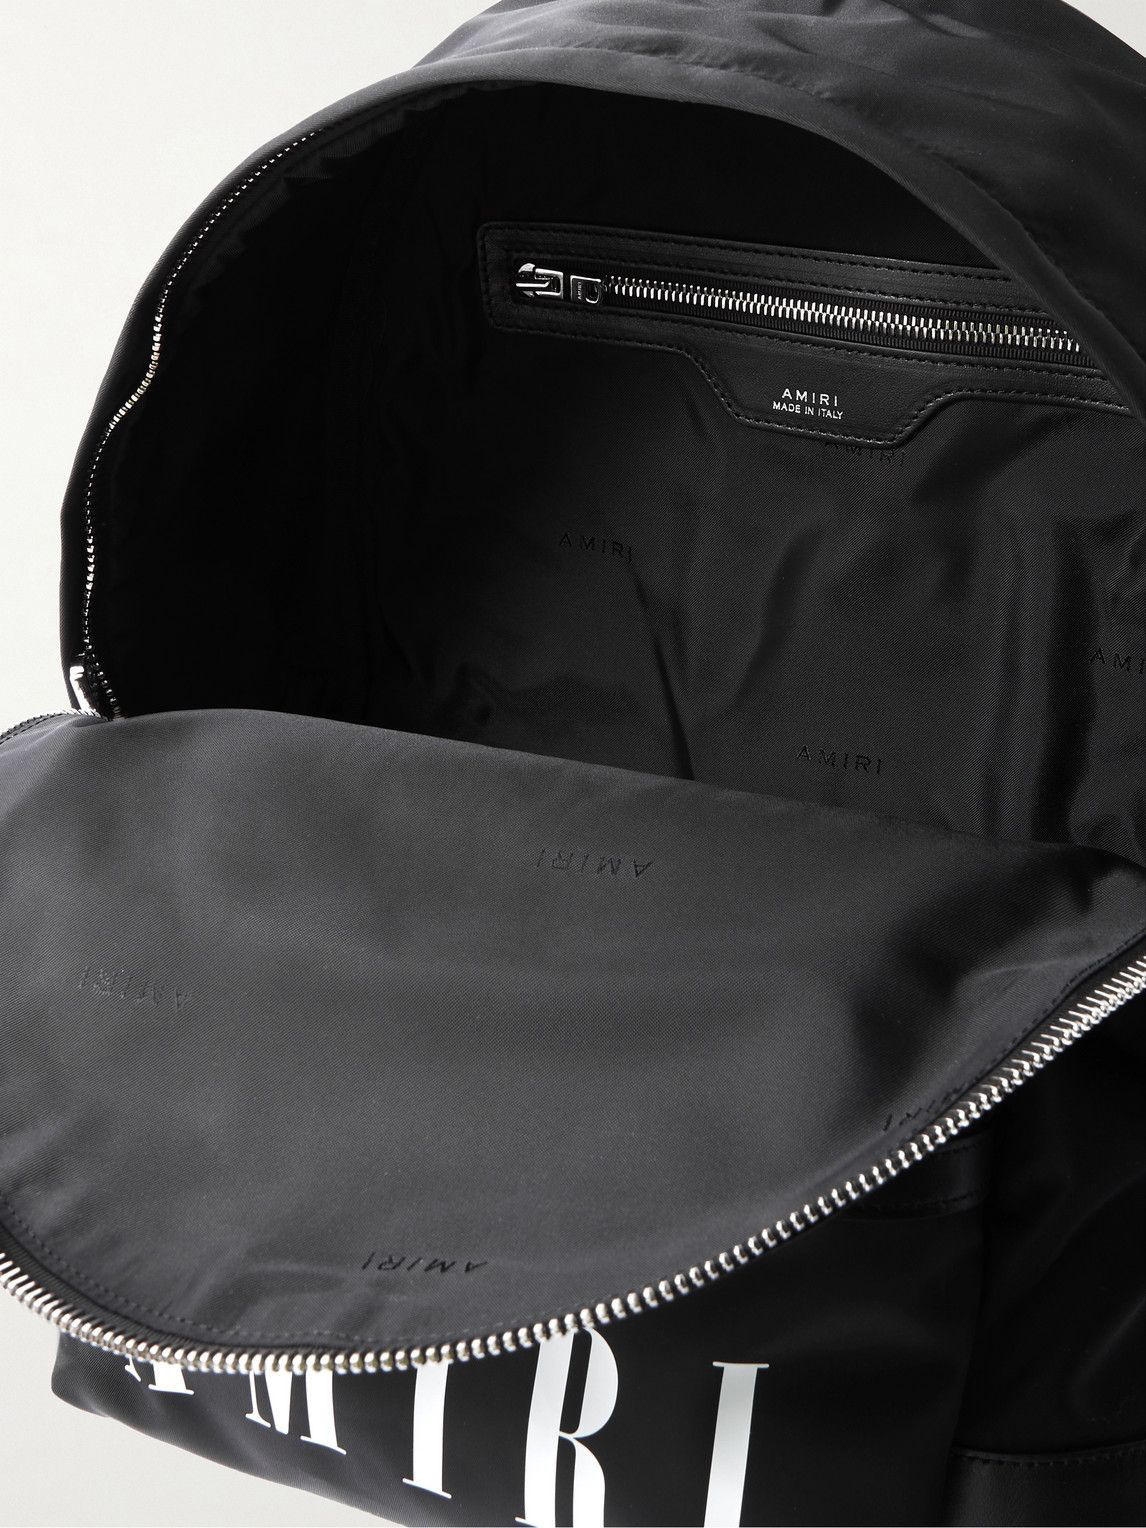 Amiri Nylon Classic Backpack in Black